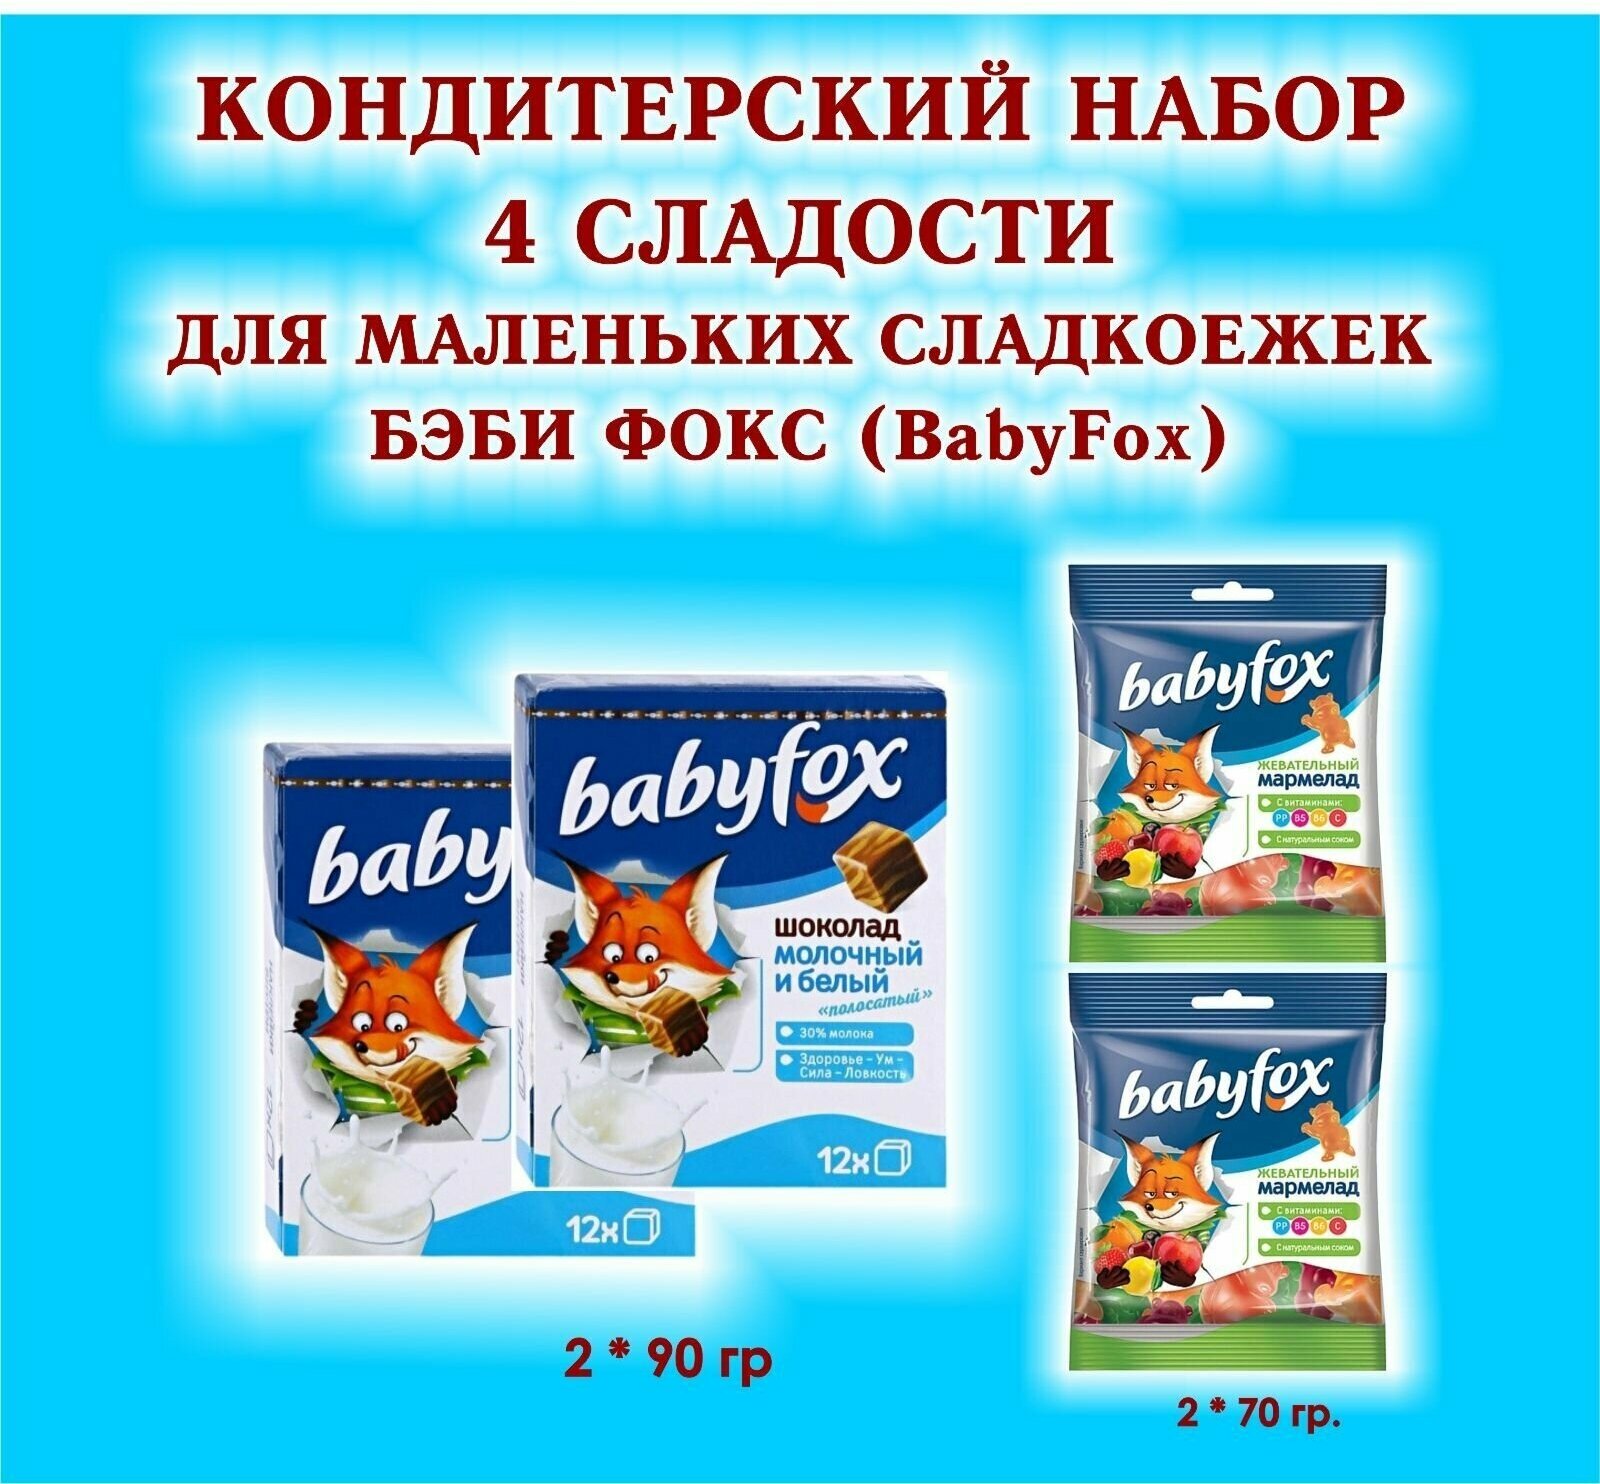 Набор сладостей "BabyFox" - Шоколад молочный 2 по 90 гр. + Мармелад жевательный 2 по 70 гр. - подарок для маленьких сладкоежек